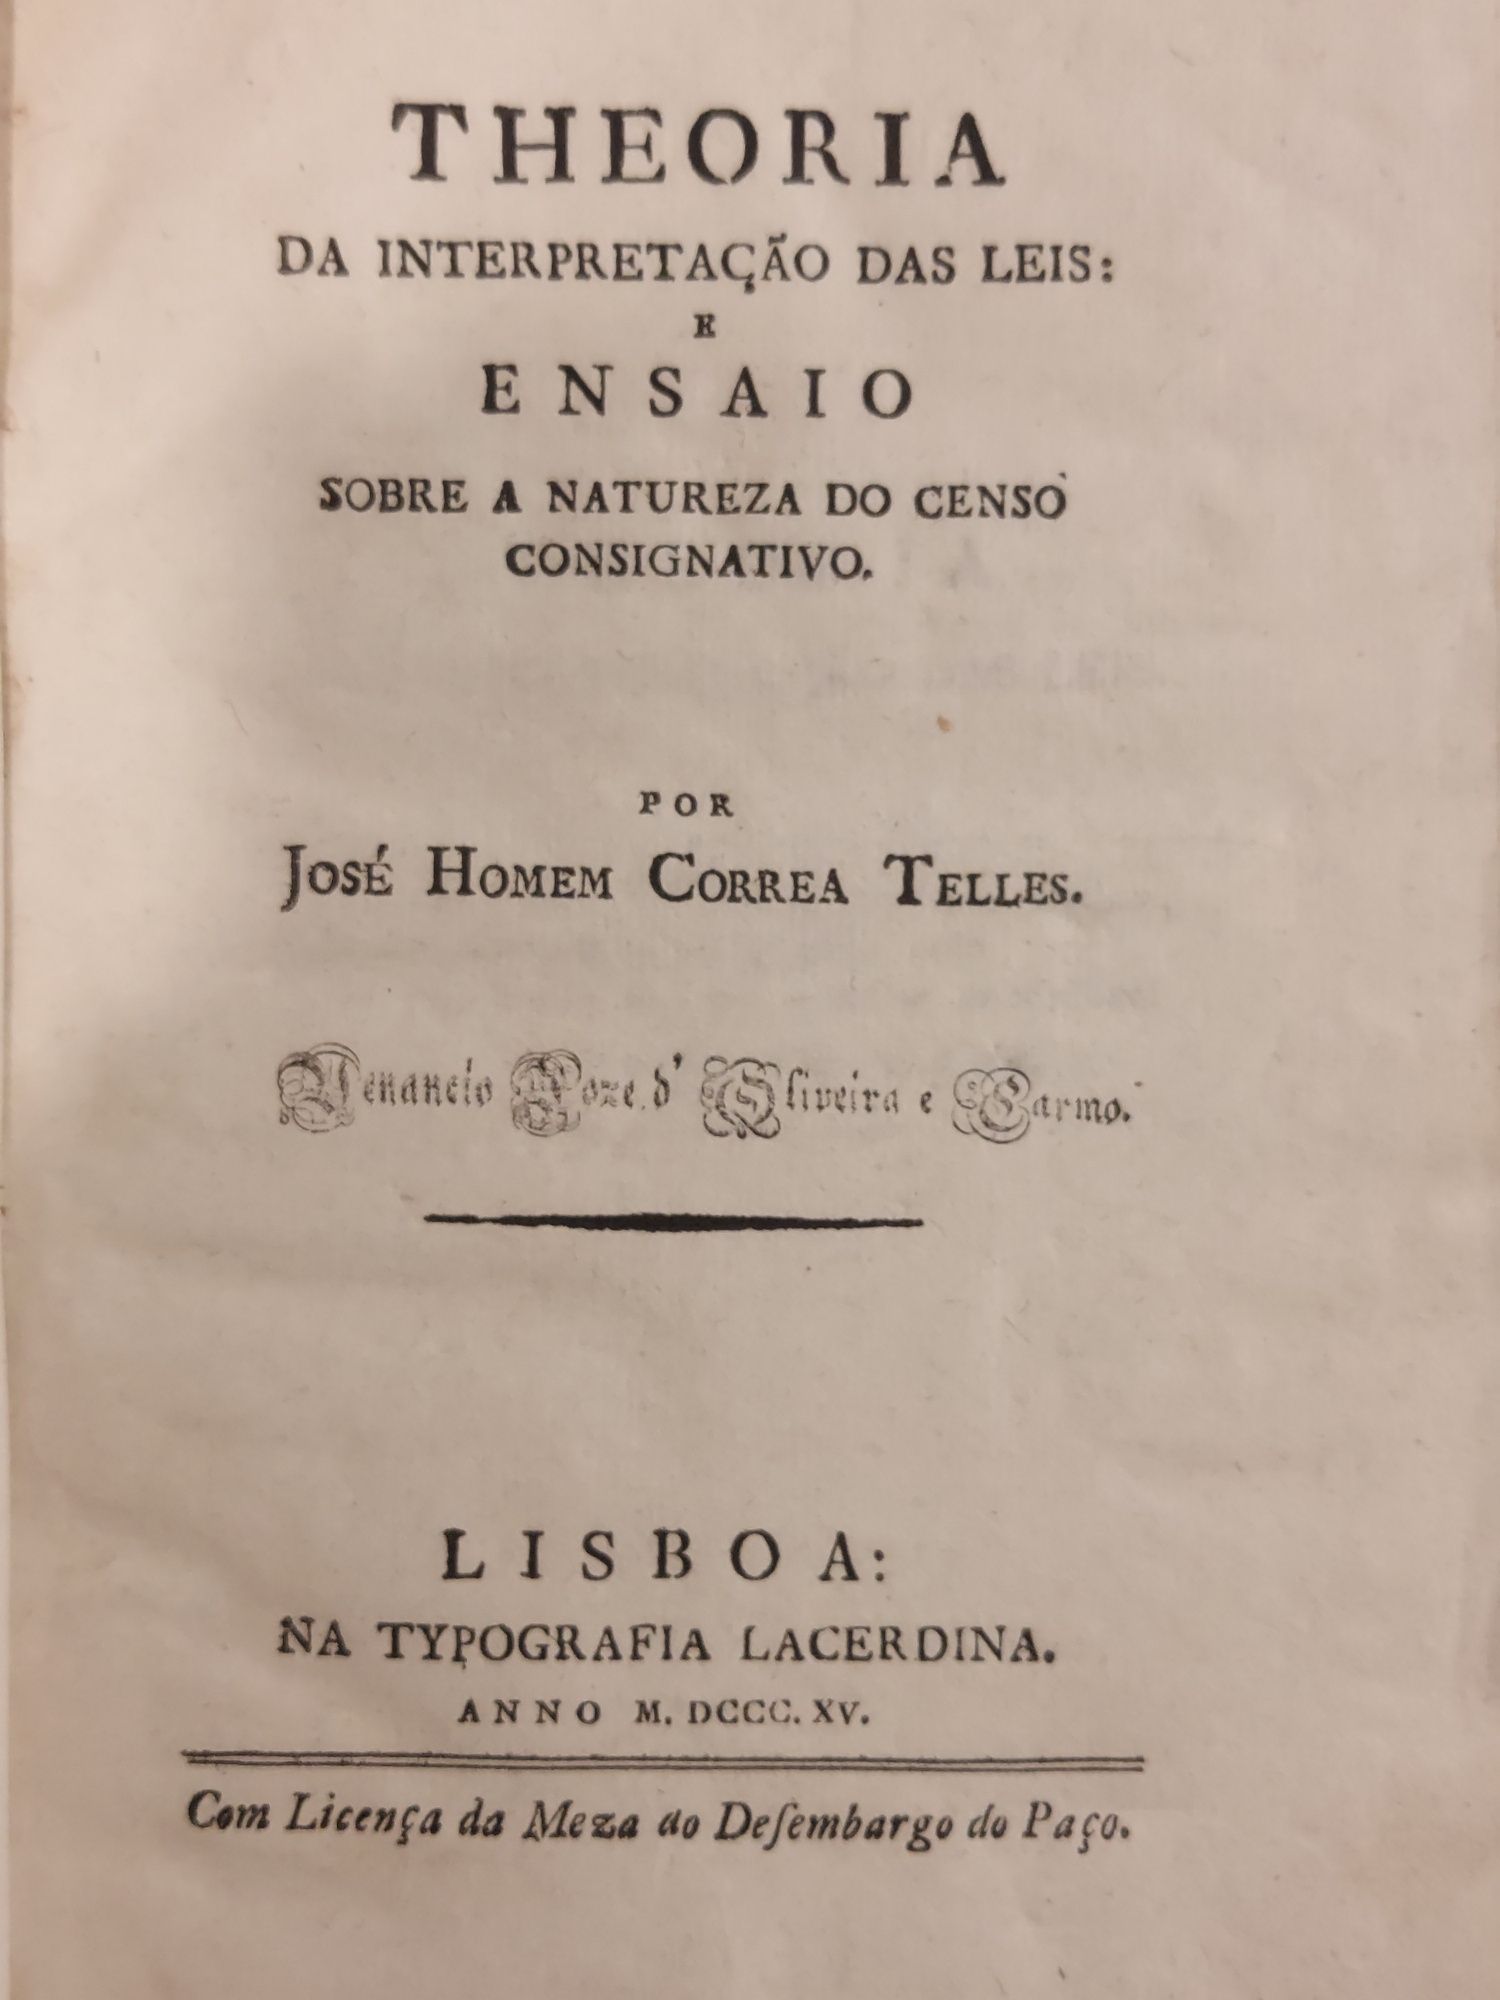 Theoria da Interpretação das Leis, Lisboa, Typografia Lacerdina, 1815